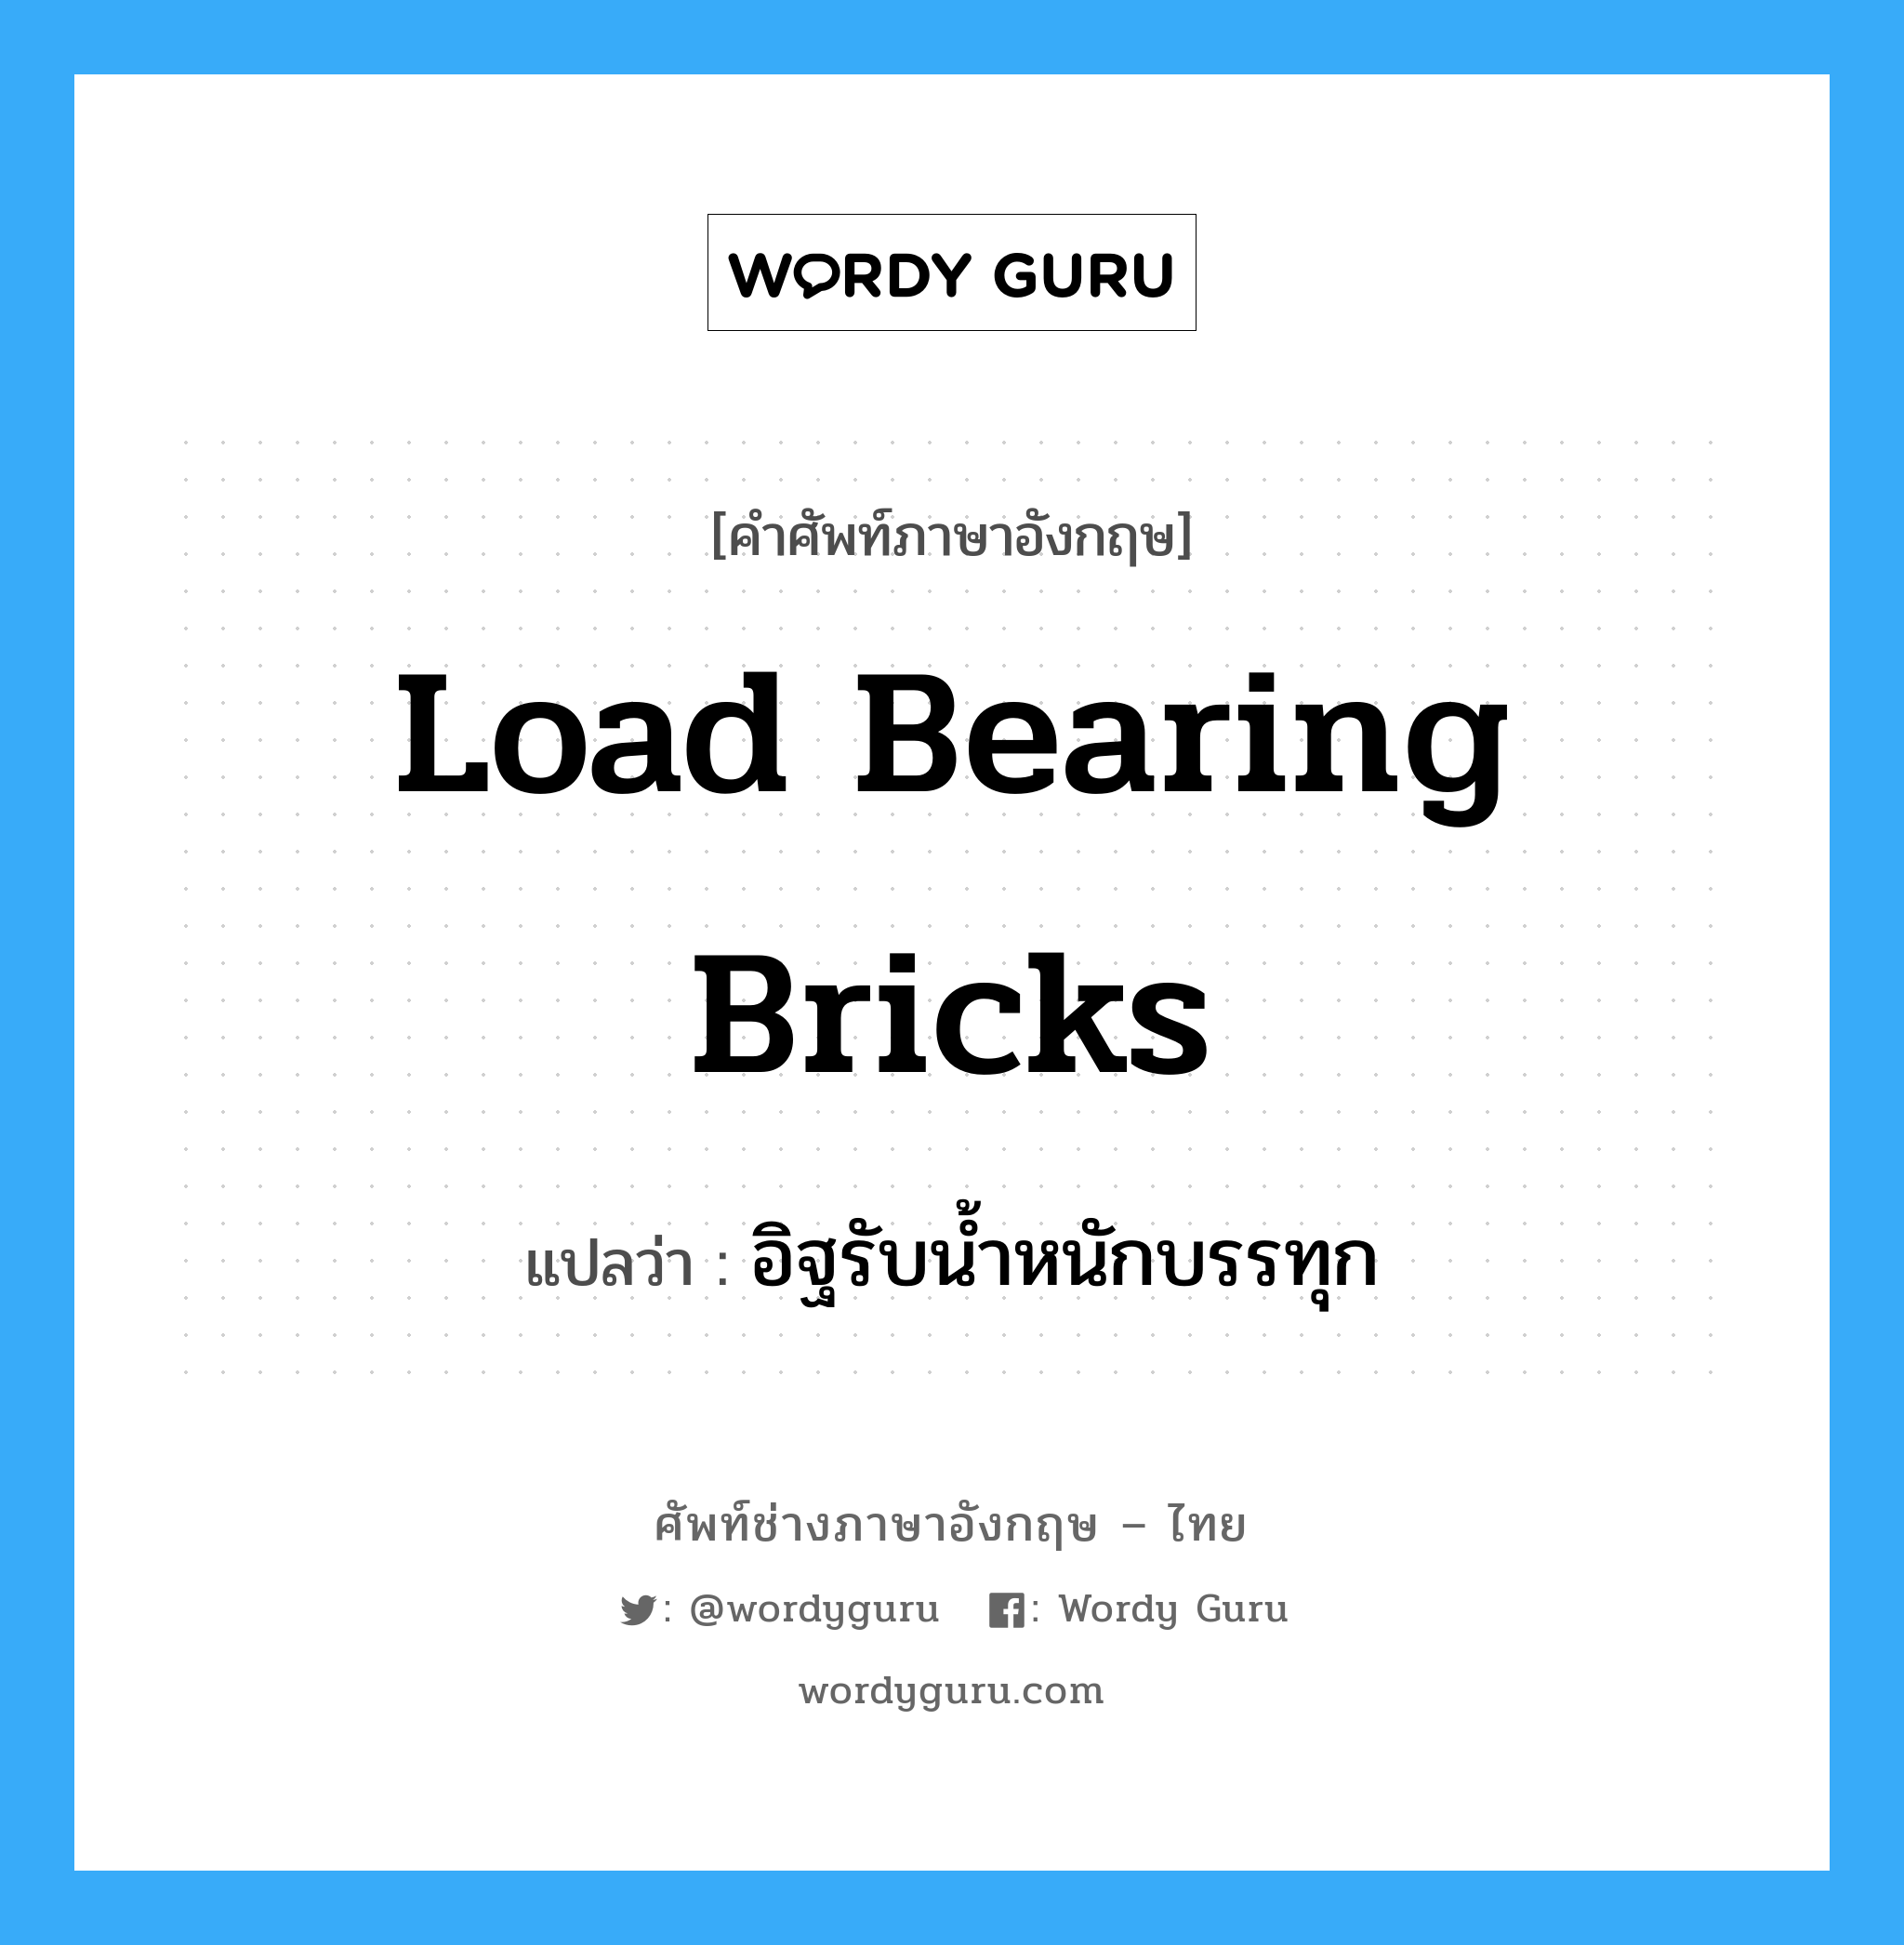 อิฐรับน้ำหนักบรรทุก ภาษาอังกฤษ?, คำศัพท์ช่างภาษาอังกฤษ - ไทย อิฐรับน้ำหนักบรรทุก คำศัพท์ภาษาอังกฤษ อิฐรับน้ำหนักบรรทุก แปลว่า load bearing bricks